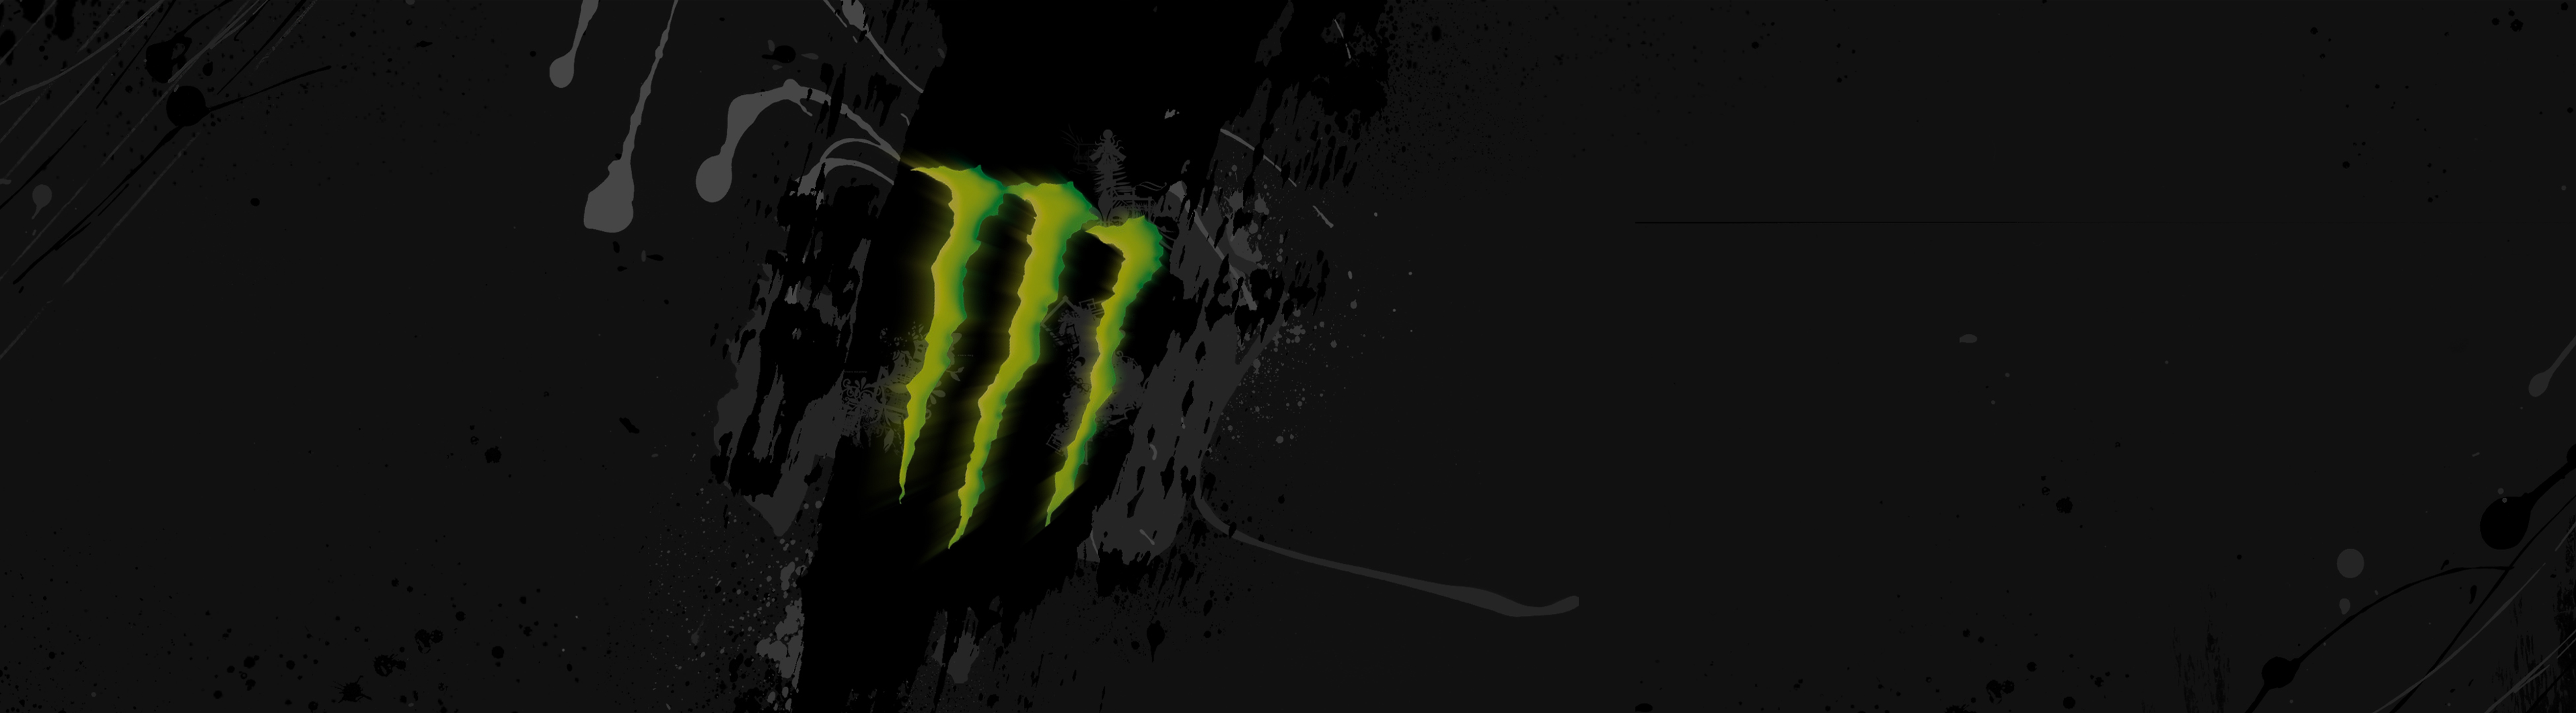 Monster_logo_wallpaper_by_Lupo7.jpg